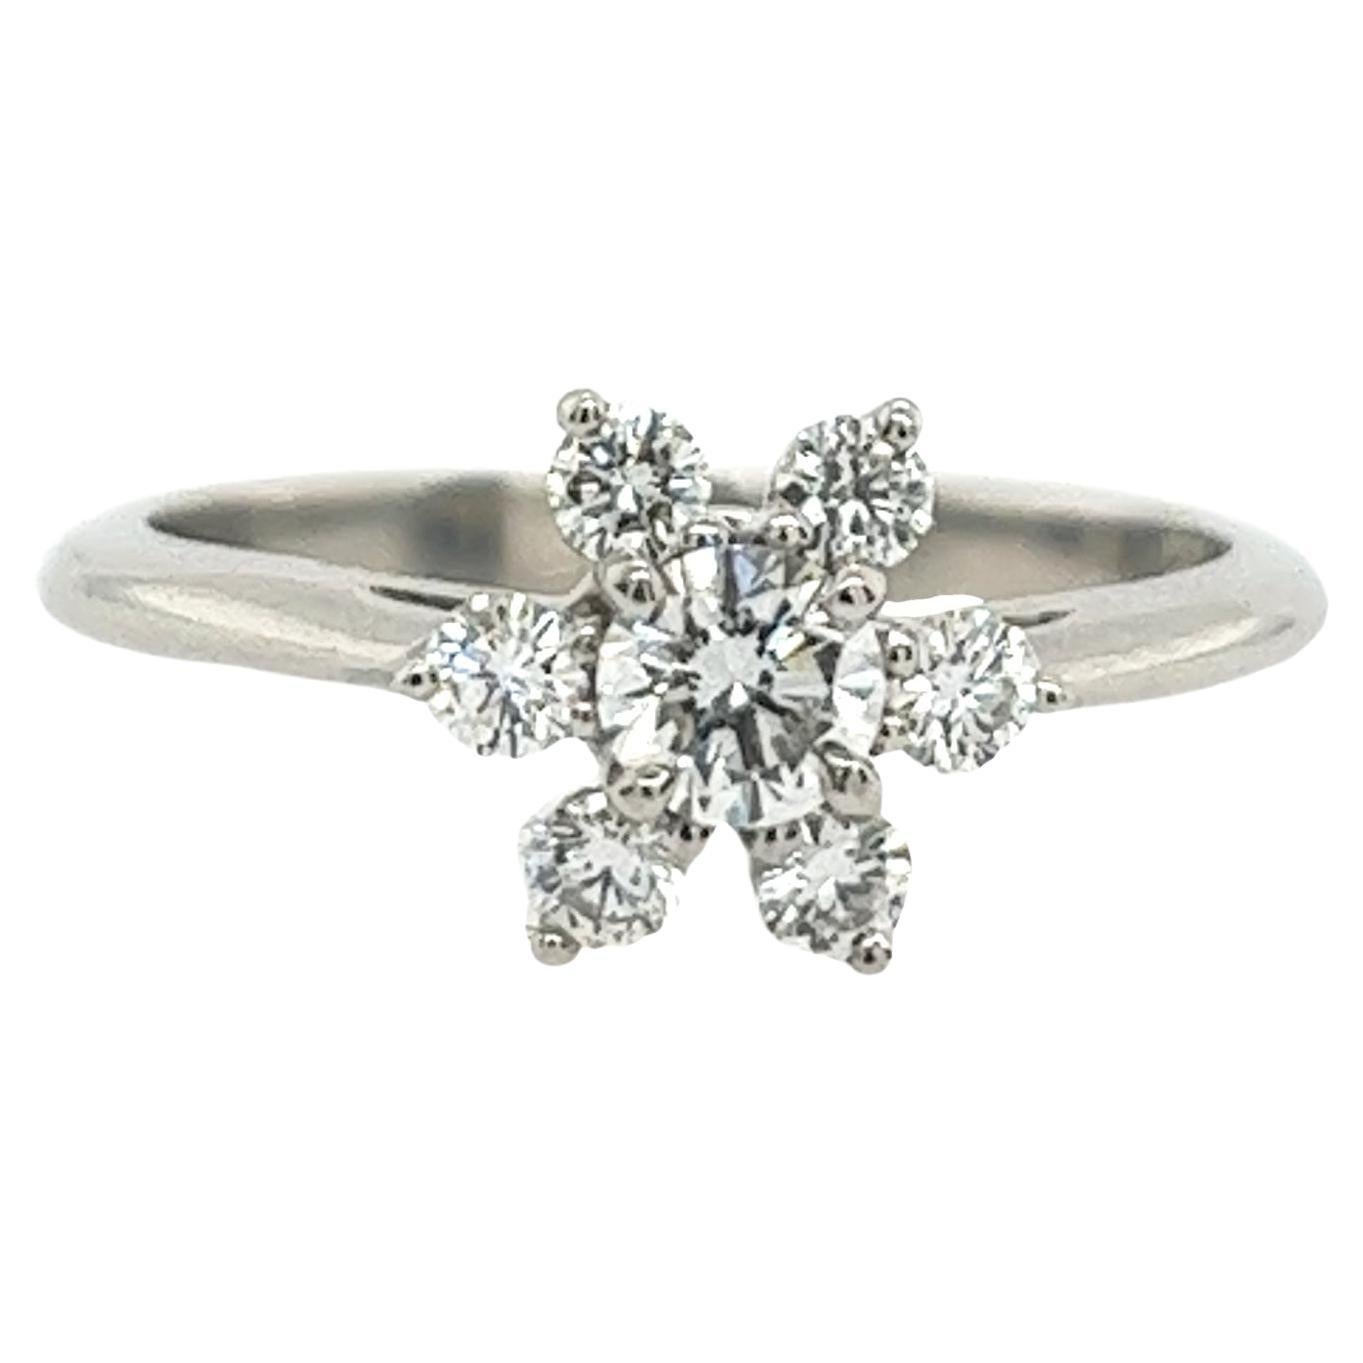 Bague grappe de diamants Tiffany & Co sertie de 7 diamants ronds 0,45 carat/G/VS